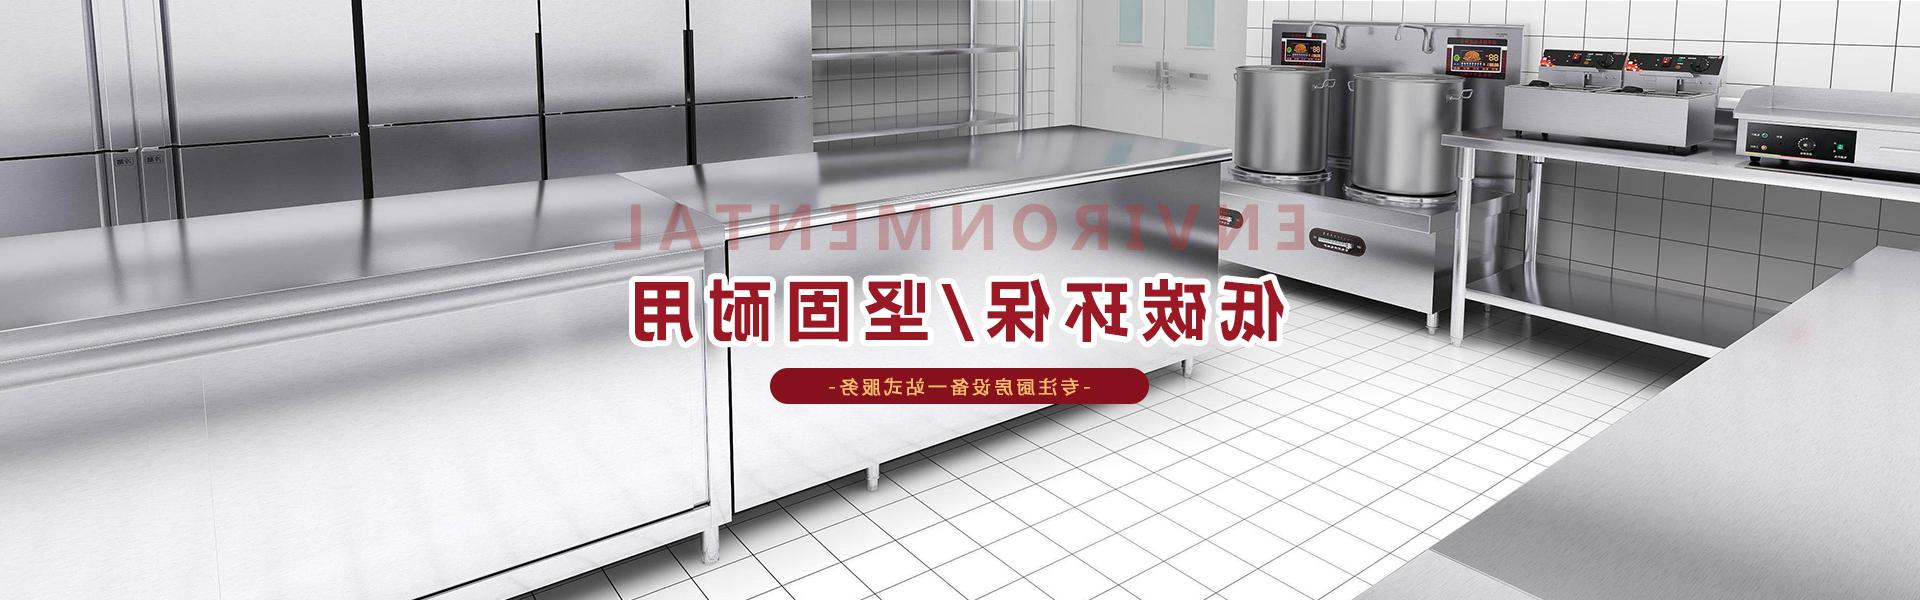 重庆不朽情缘公司百年厨房工程